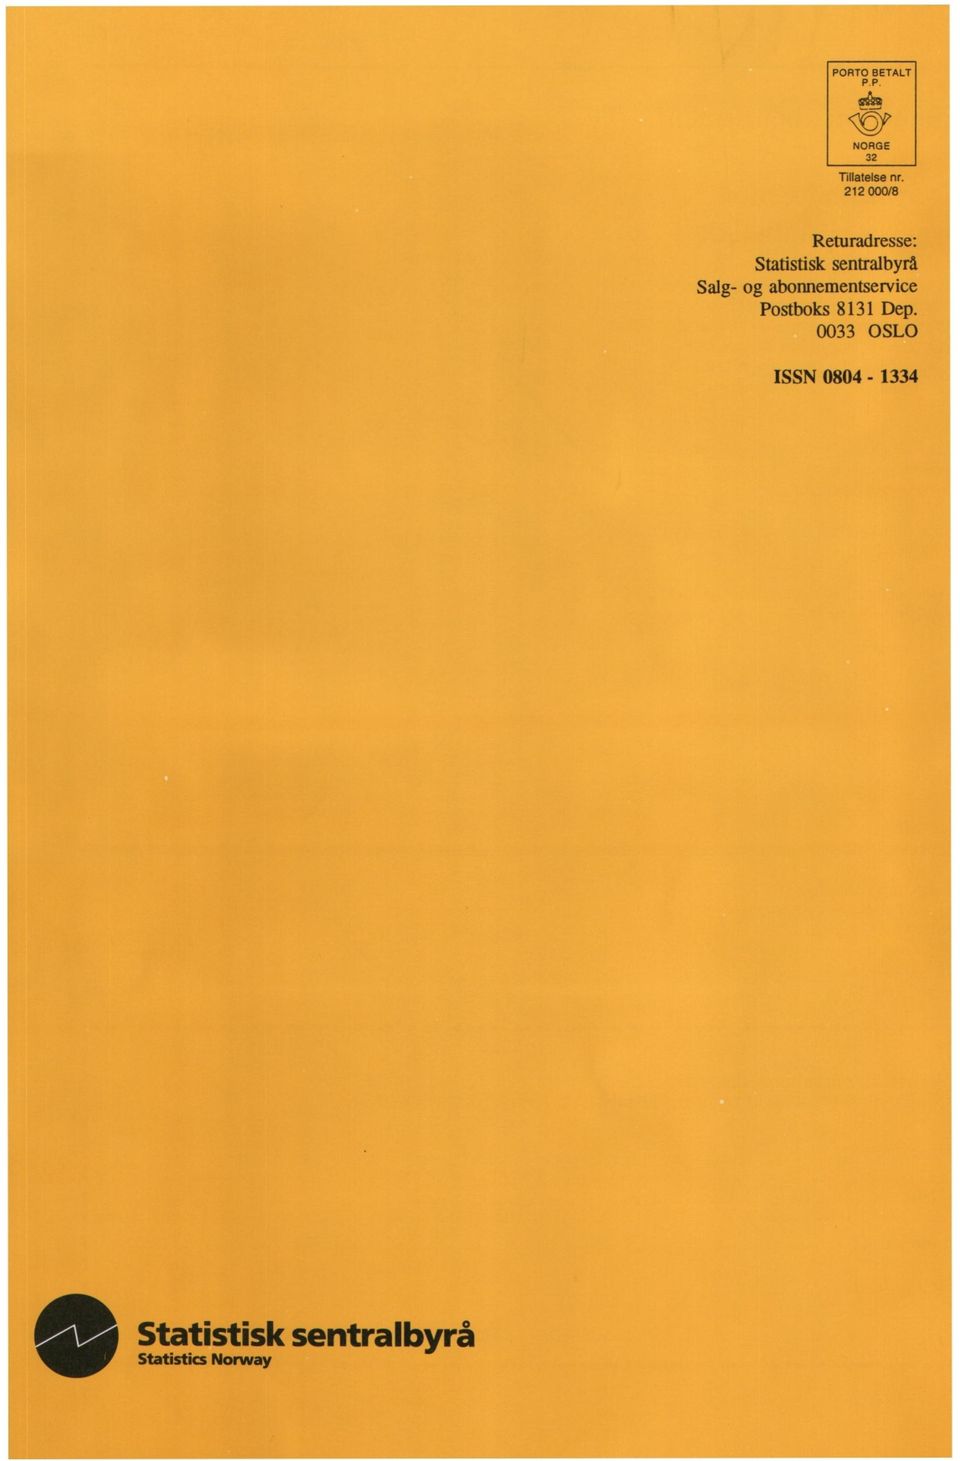 Salg- og abonnementservice Postboks 8131 Dep.